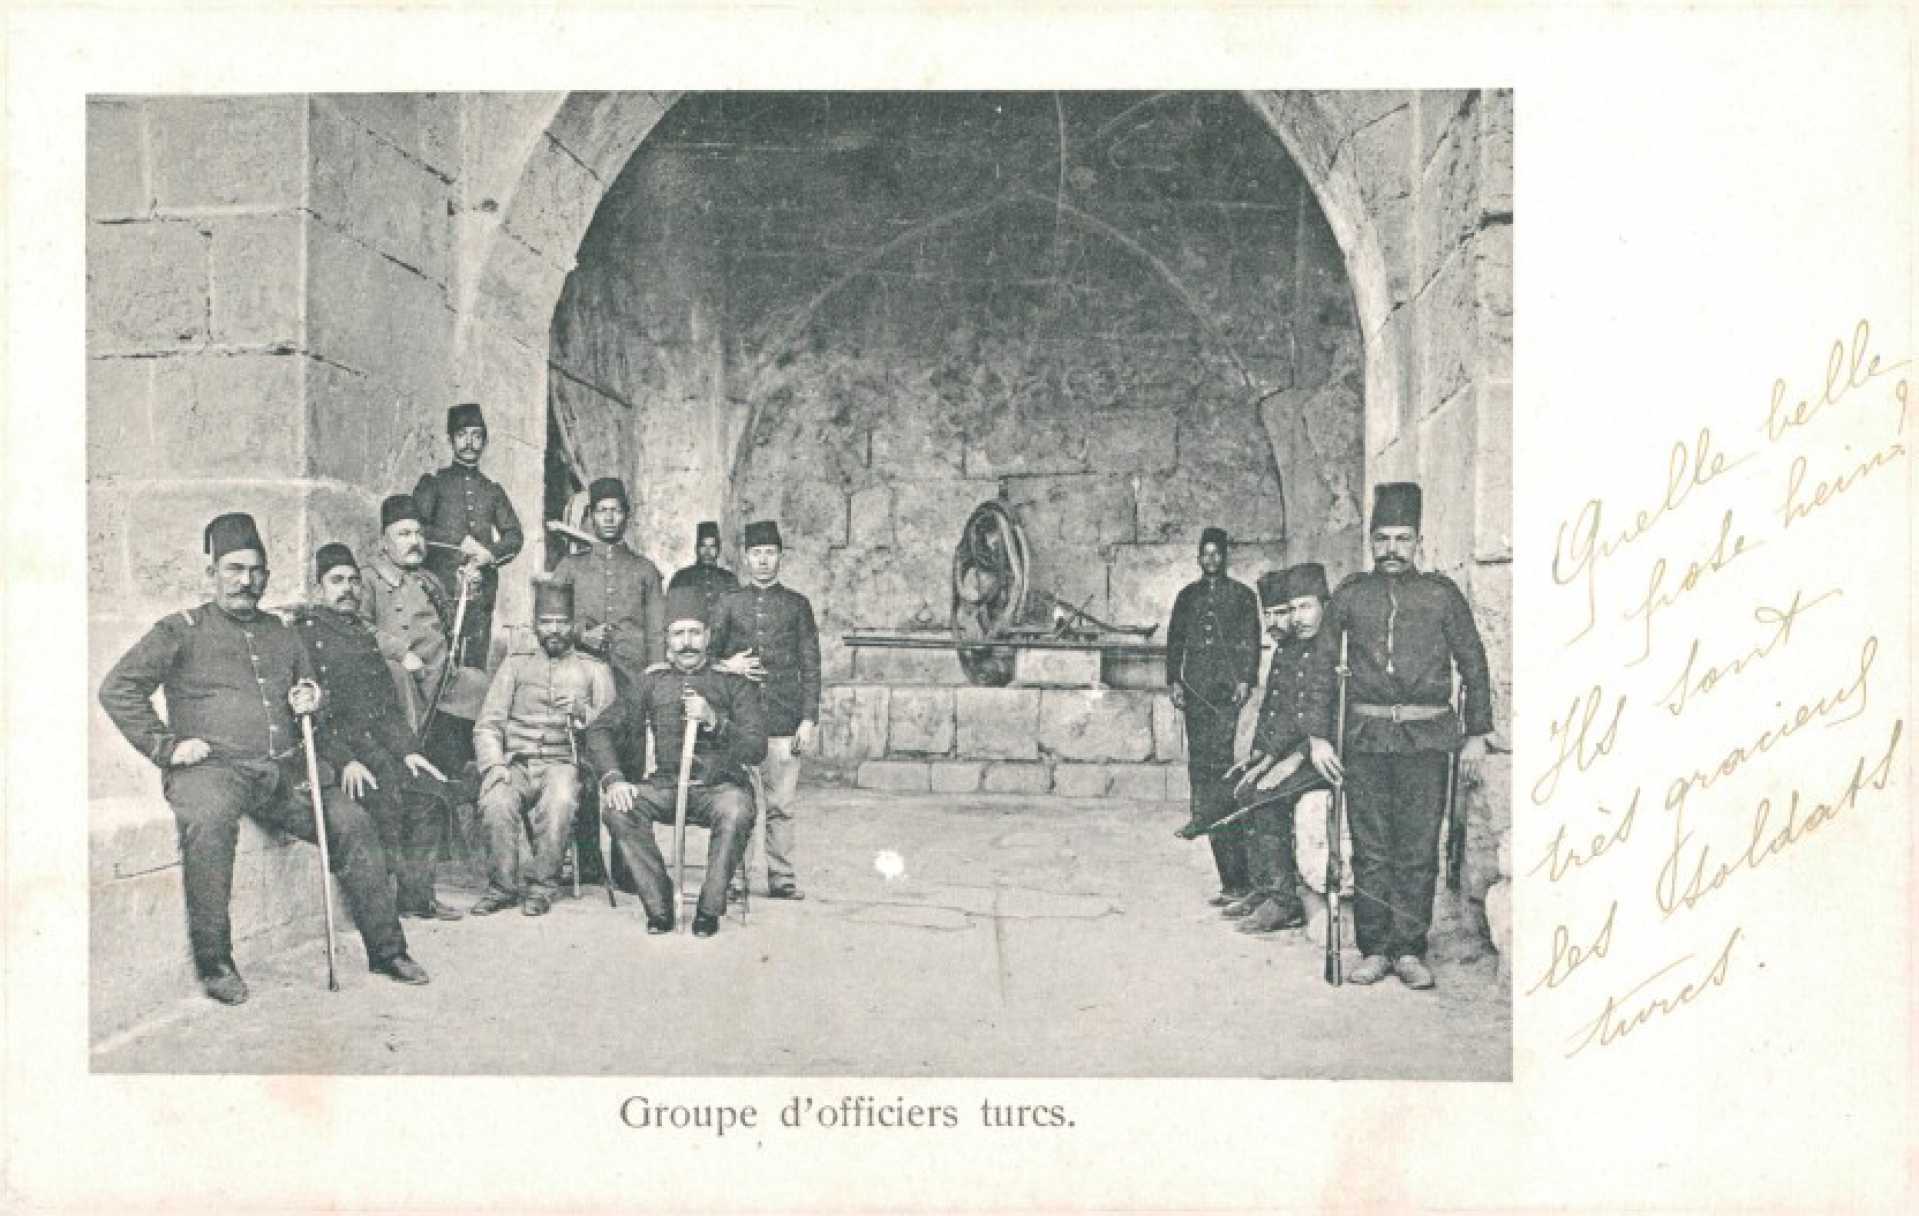 Groupe d’officiers turcs